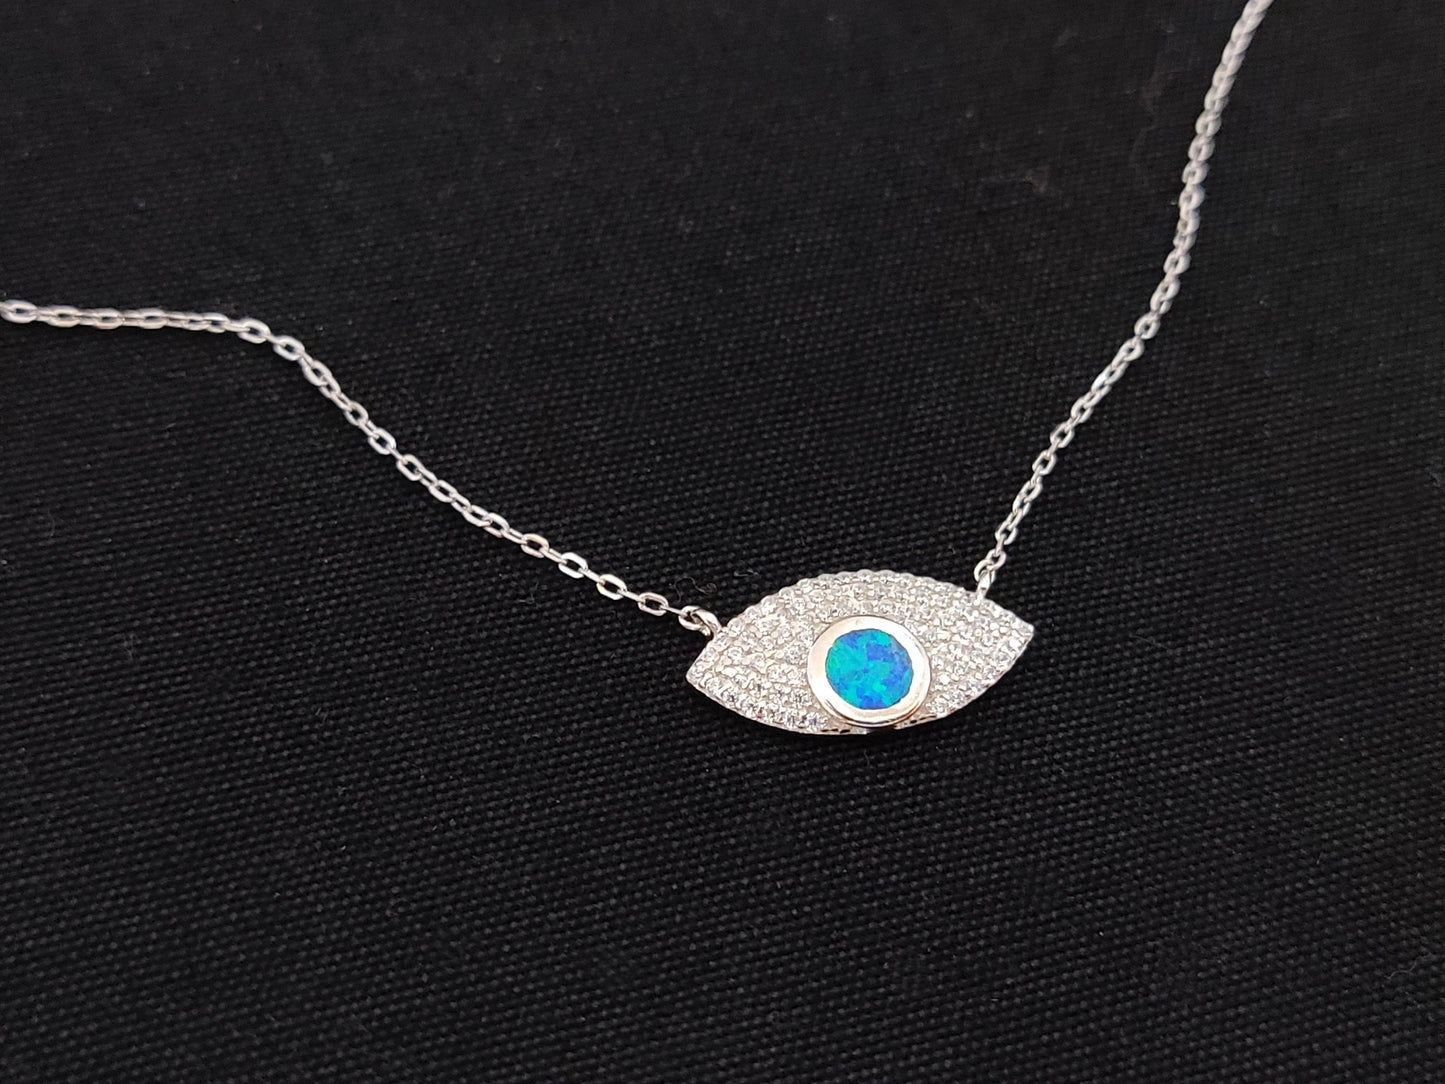 Sterling Silver 925 Fire Rainbow Blue Opal & Crystal Evil Eye Chain Pendant Necklace, Griechischer Opal Kette, Bijoux Grecque, Greek Jewelry